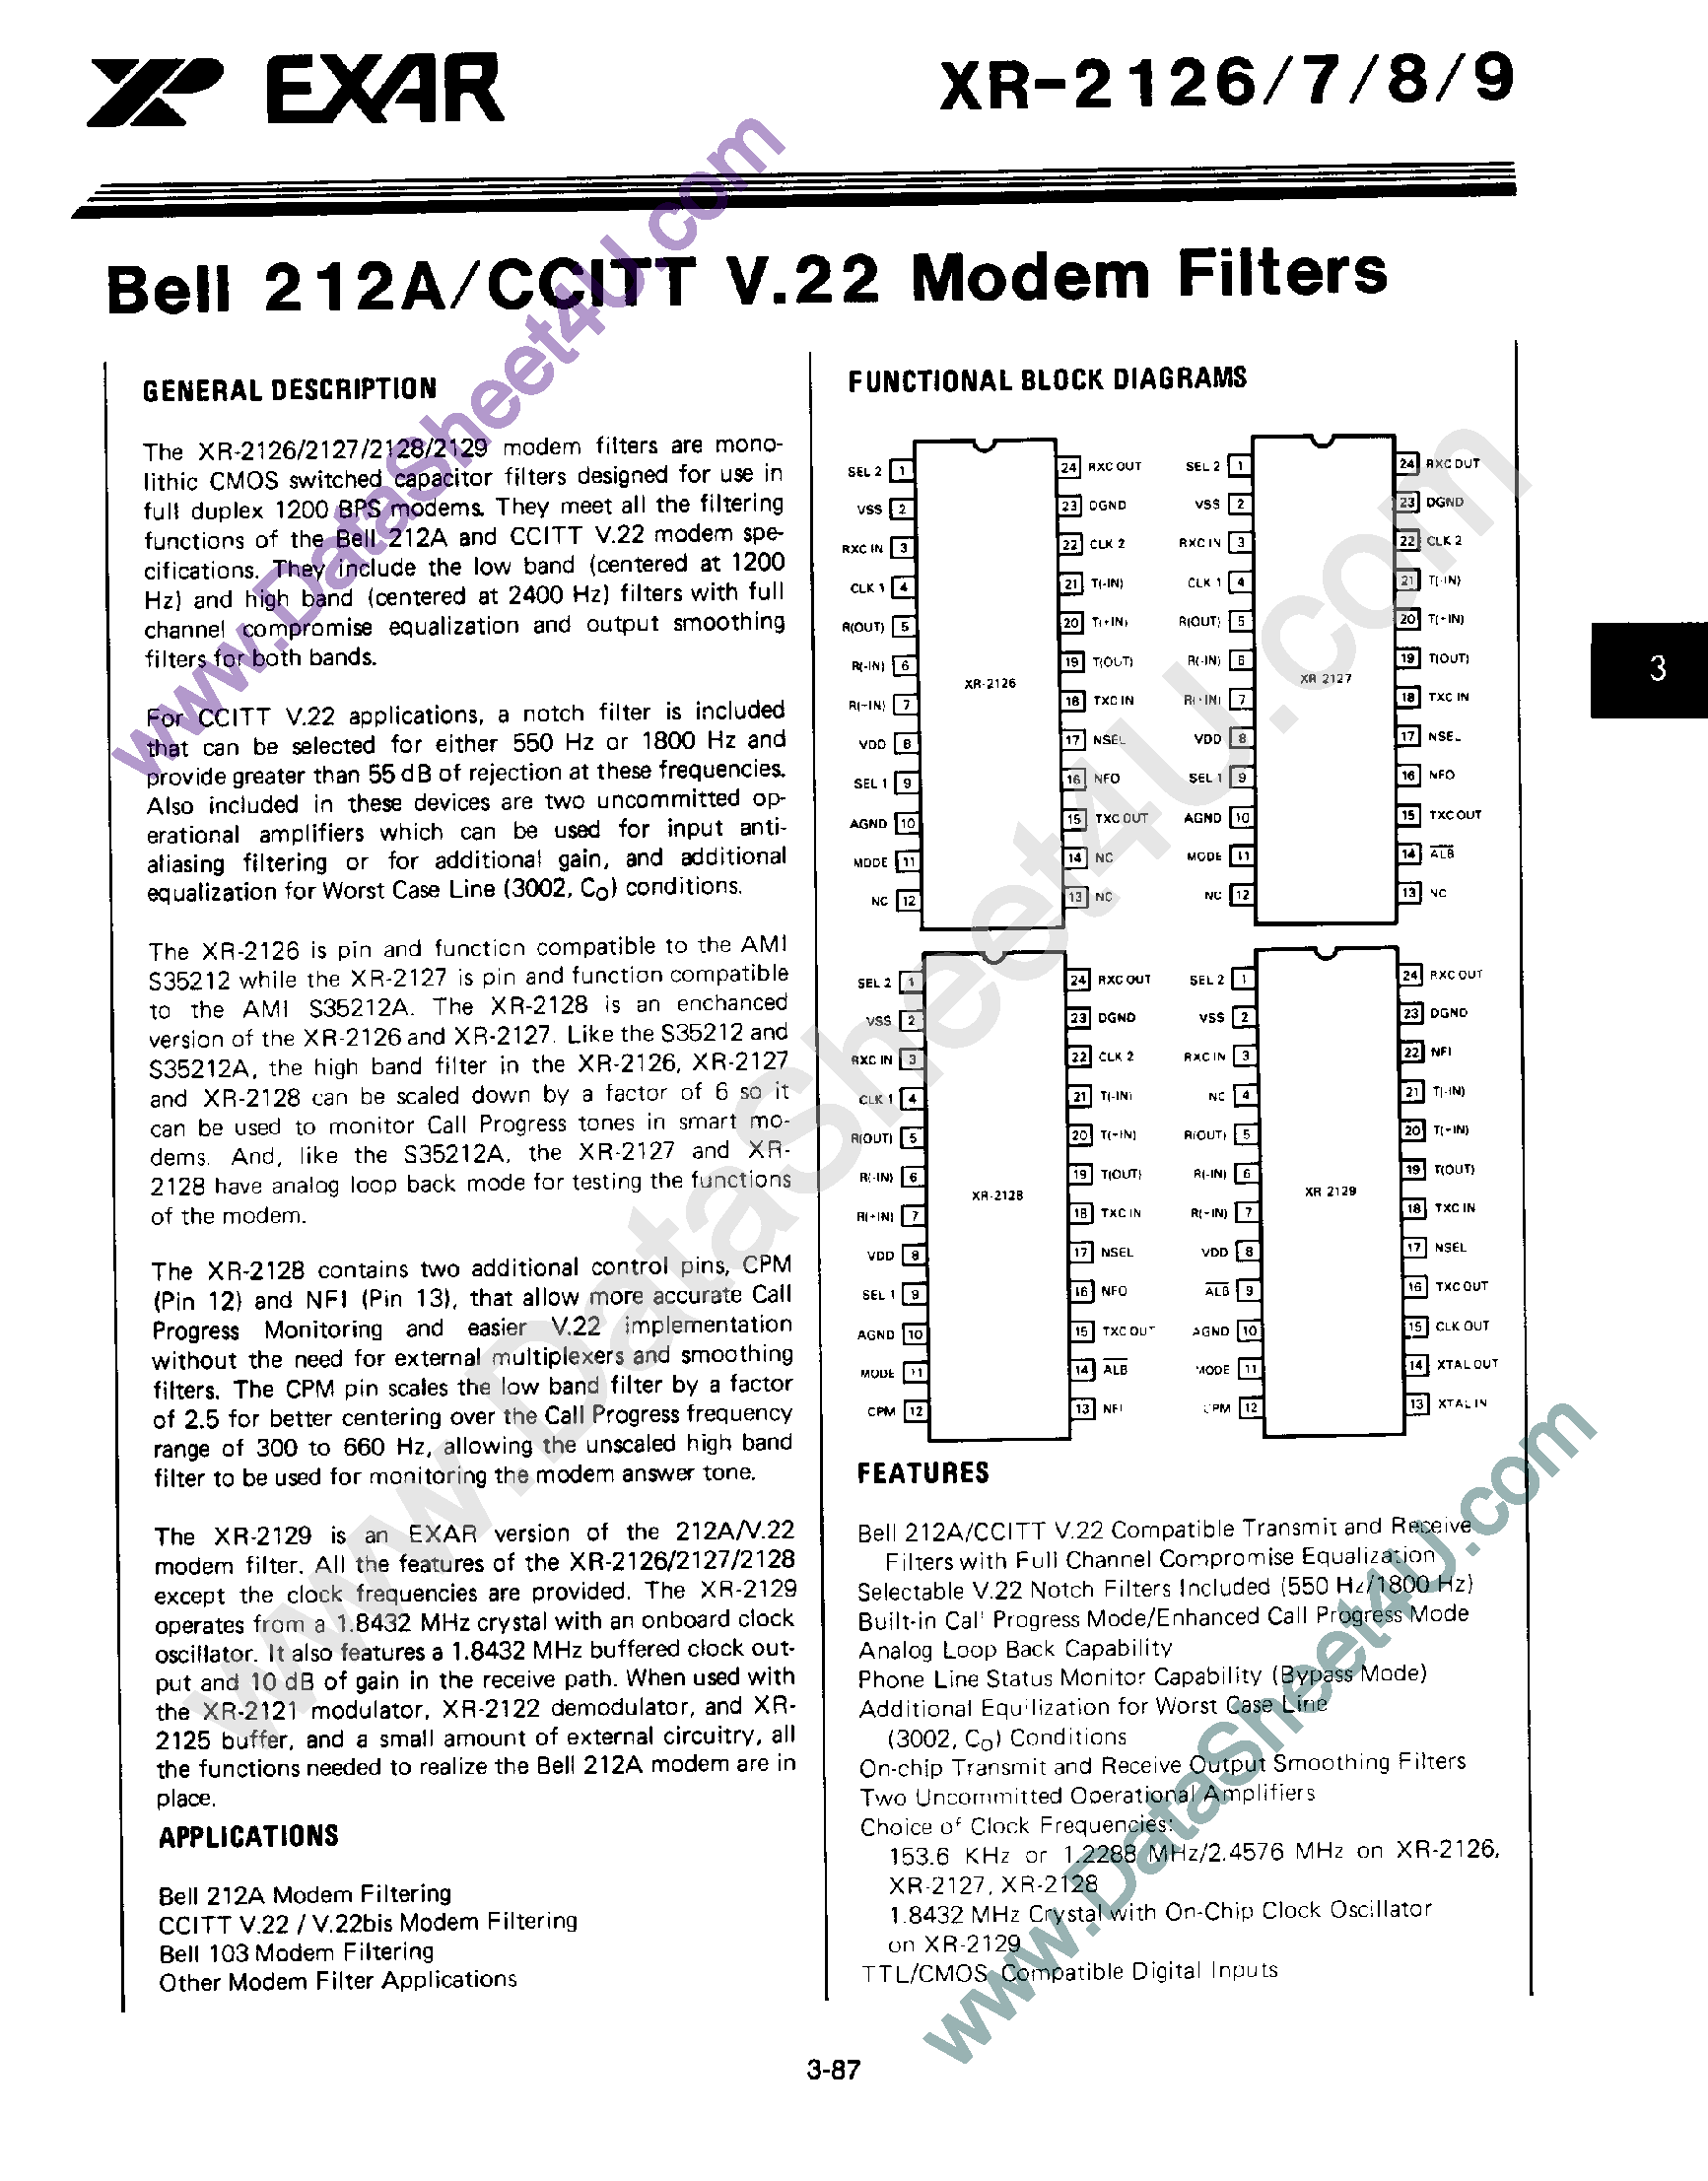 Даташит XR-2129 - Bell 212A / CCITT V.22 Modem Filters страница 1